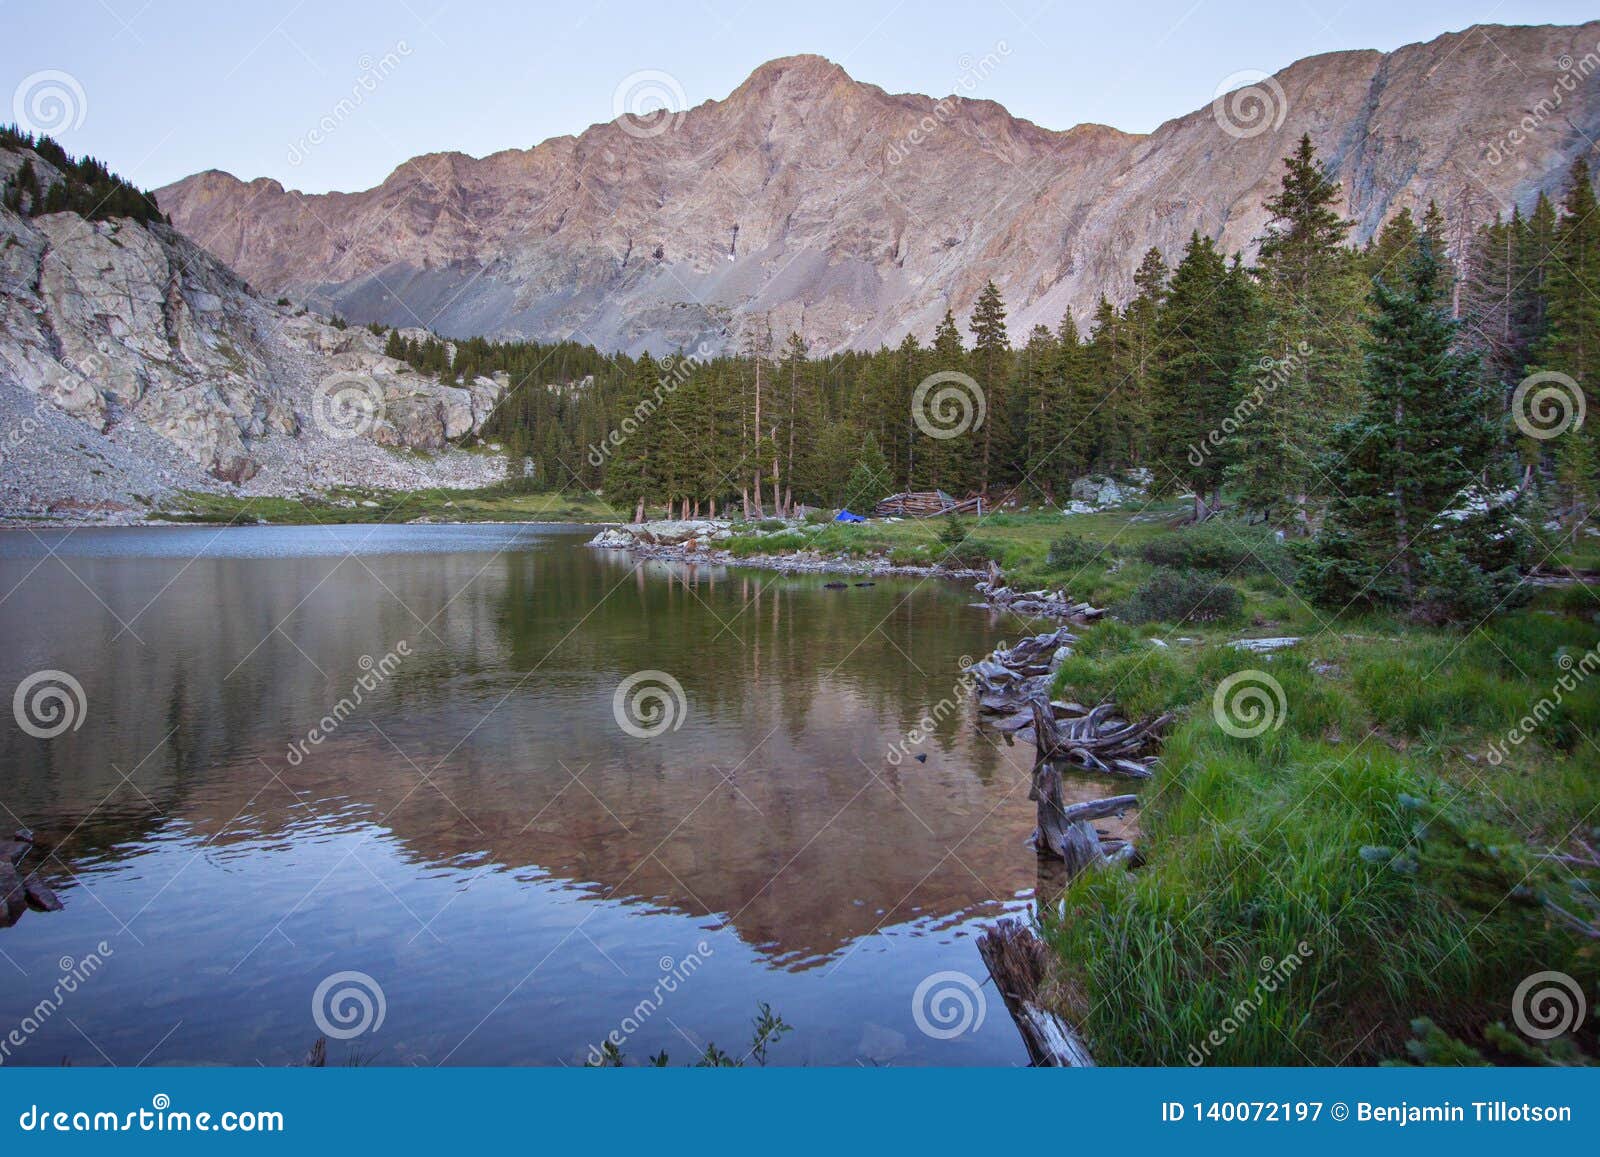 lake como in the sangre de cristo mountains of colorado